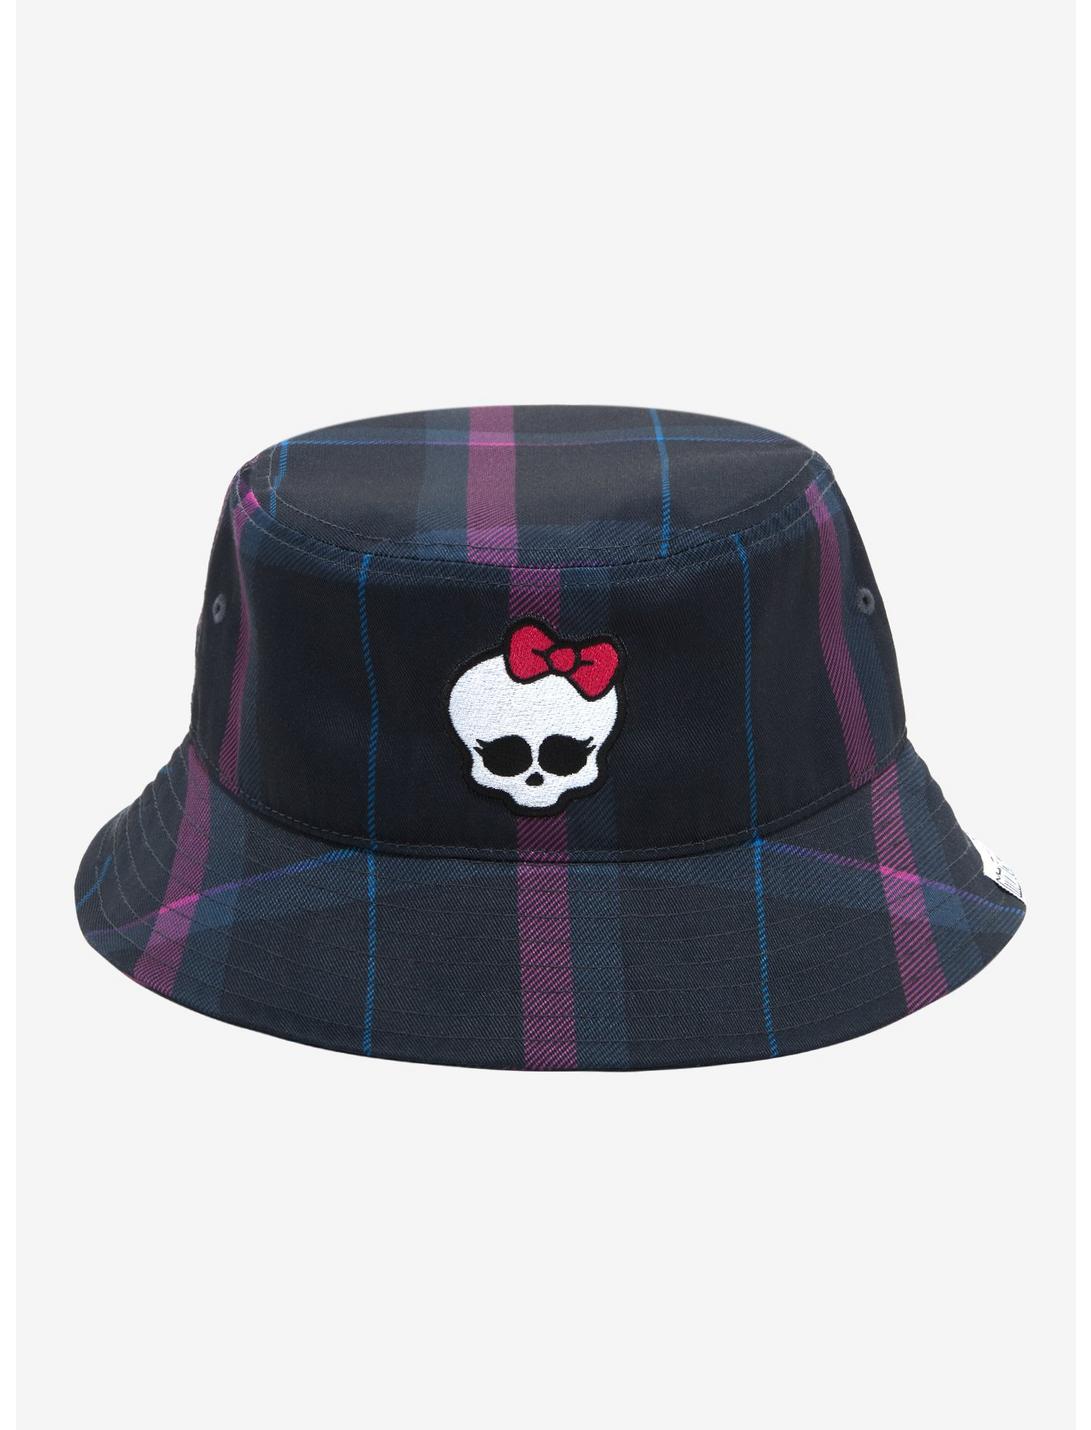 Monster High Plaid Skullette Bucket Hat, , hi-res